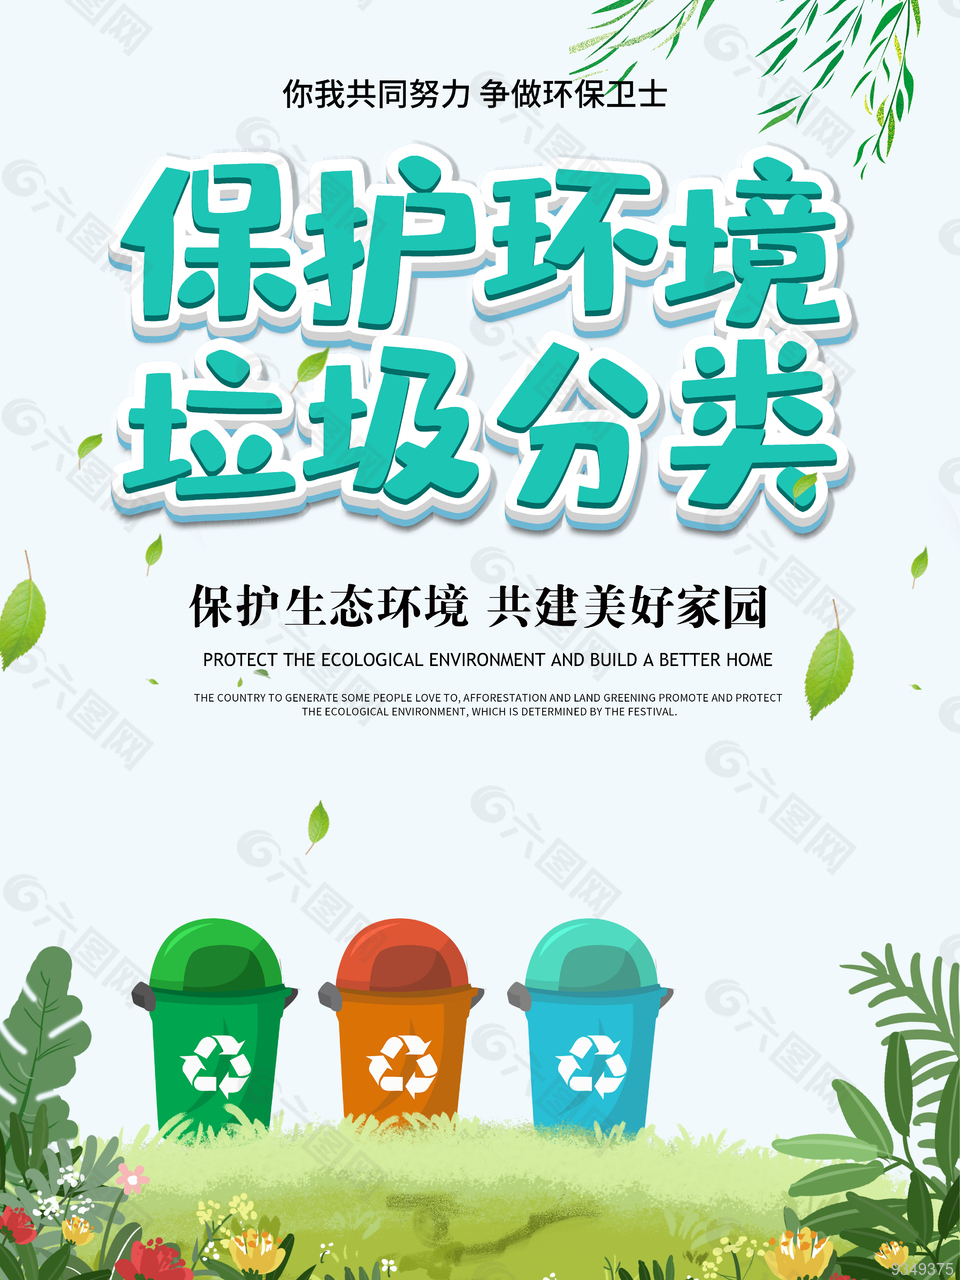 保护环境 垃圾分类